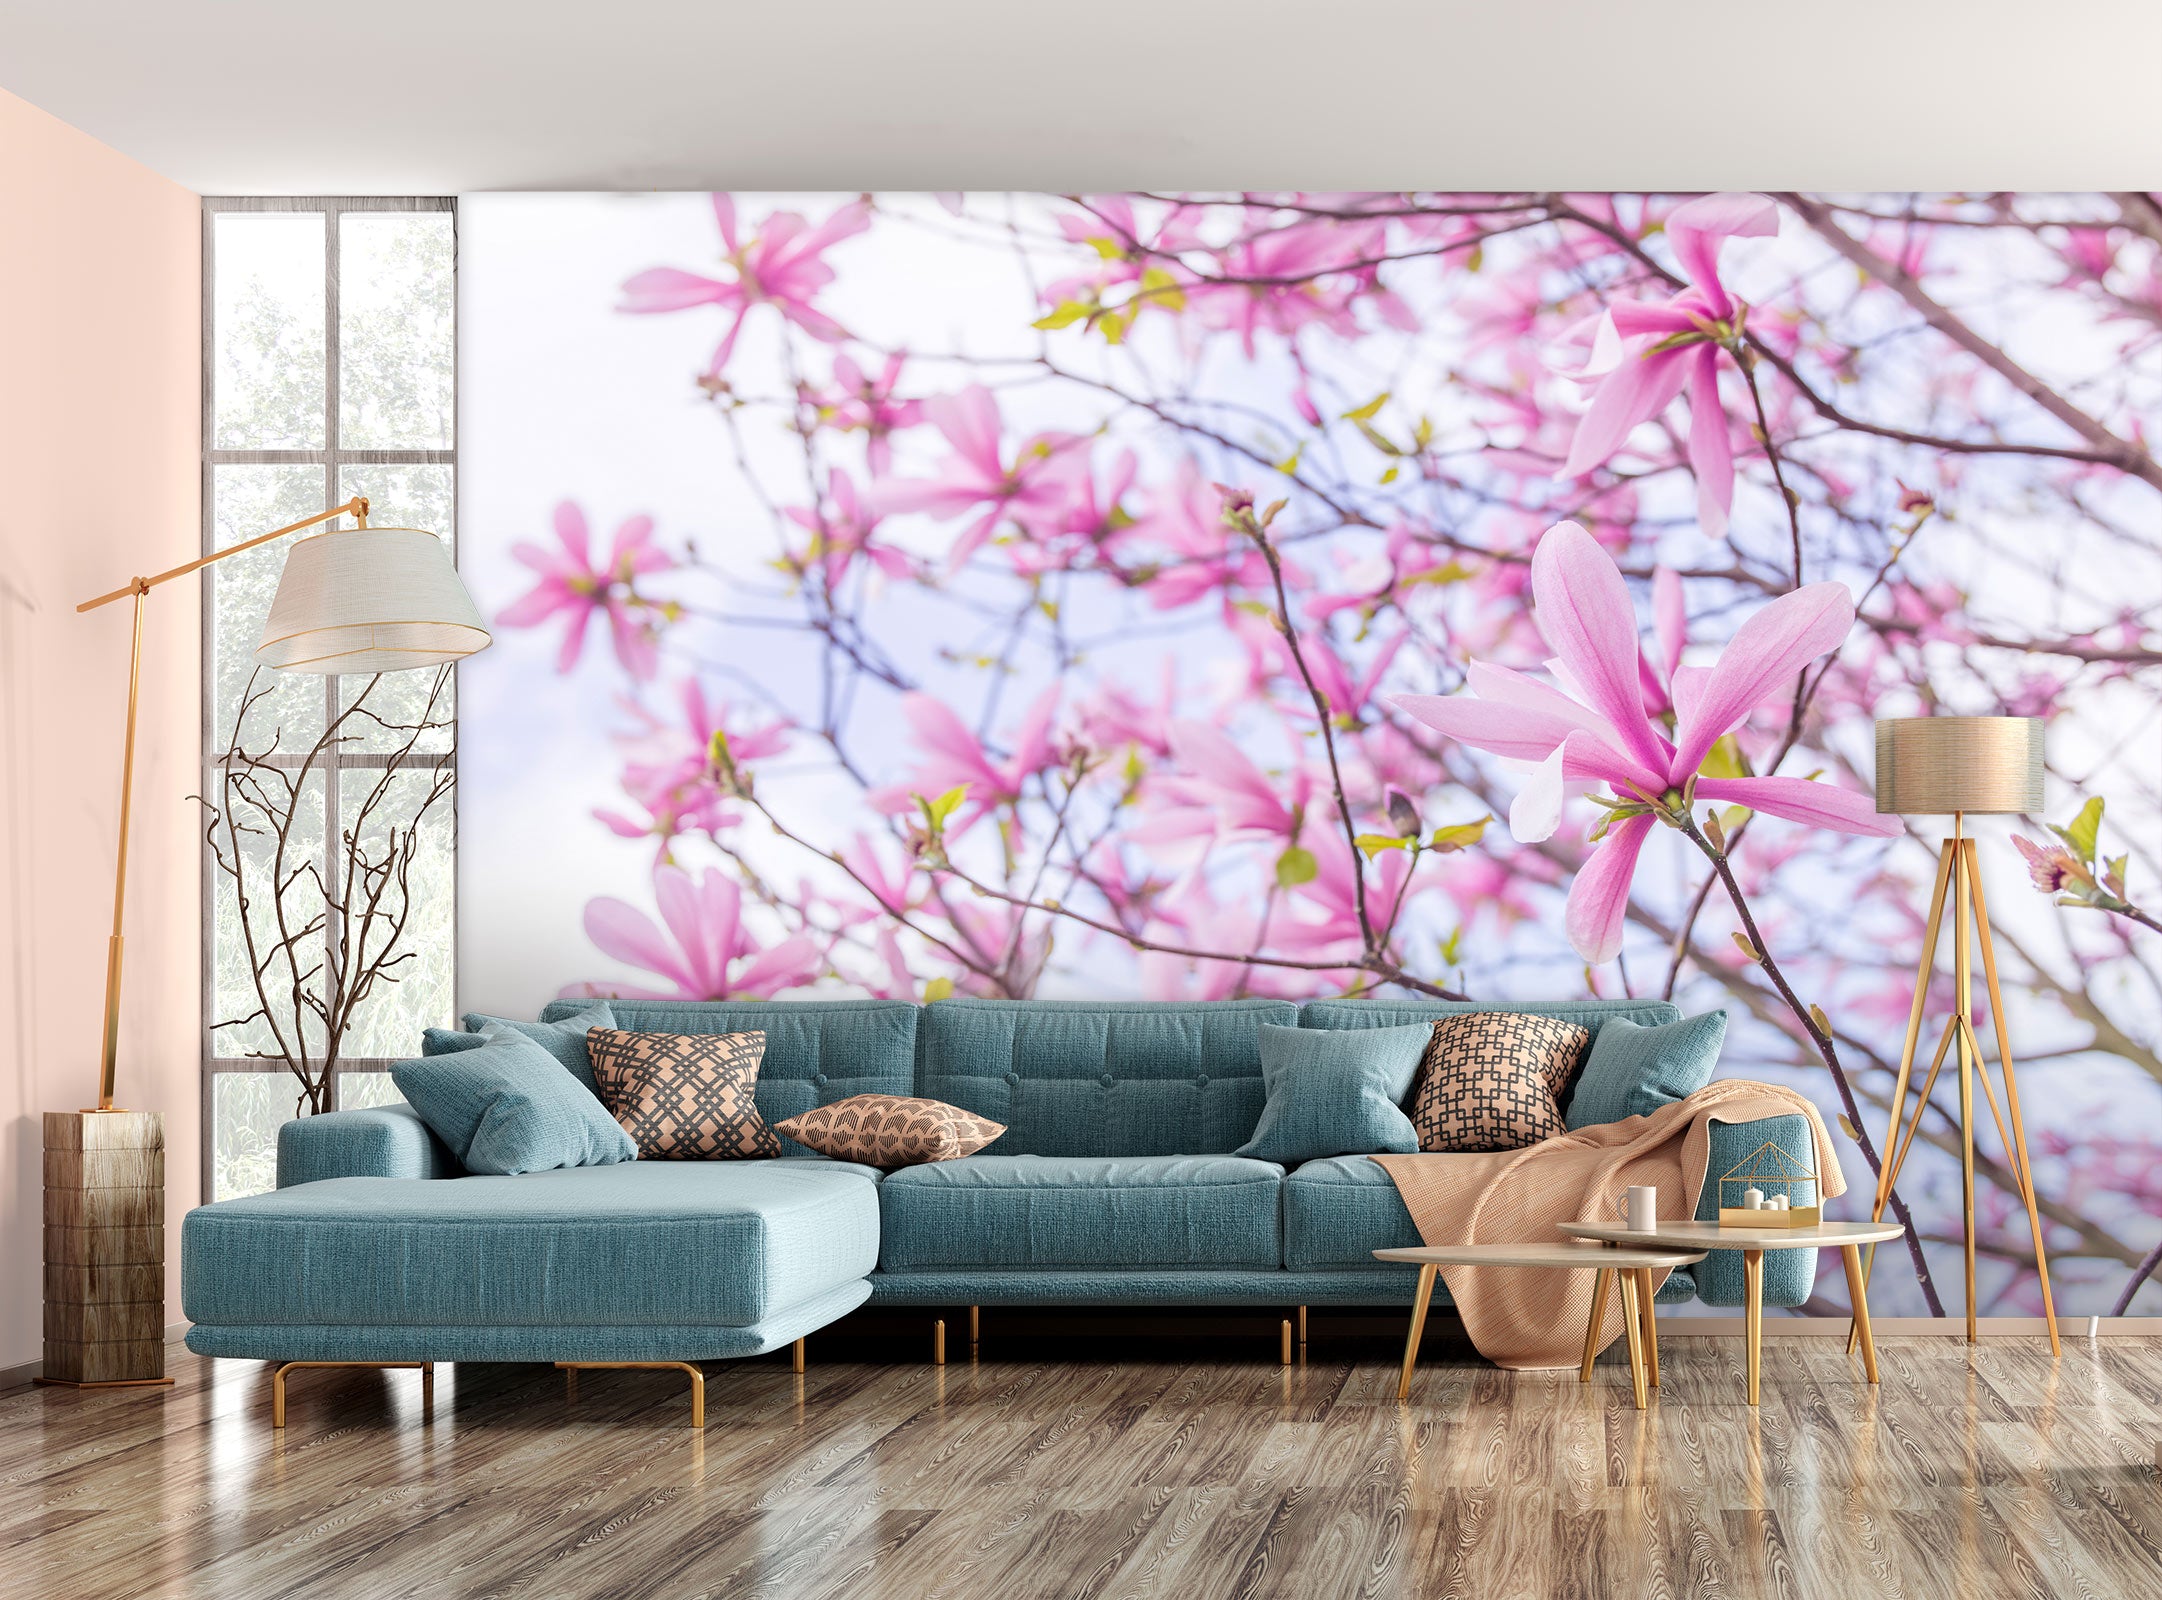 3D Flower Branch 6243 Assaf Frank Wall Mural Wall Murals